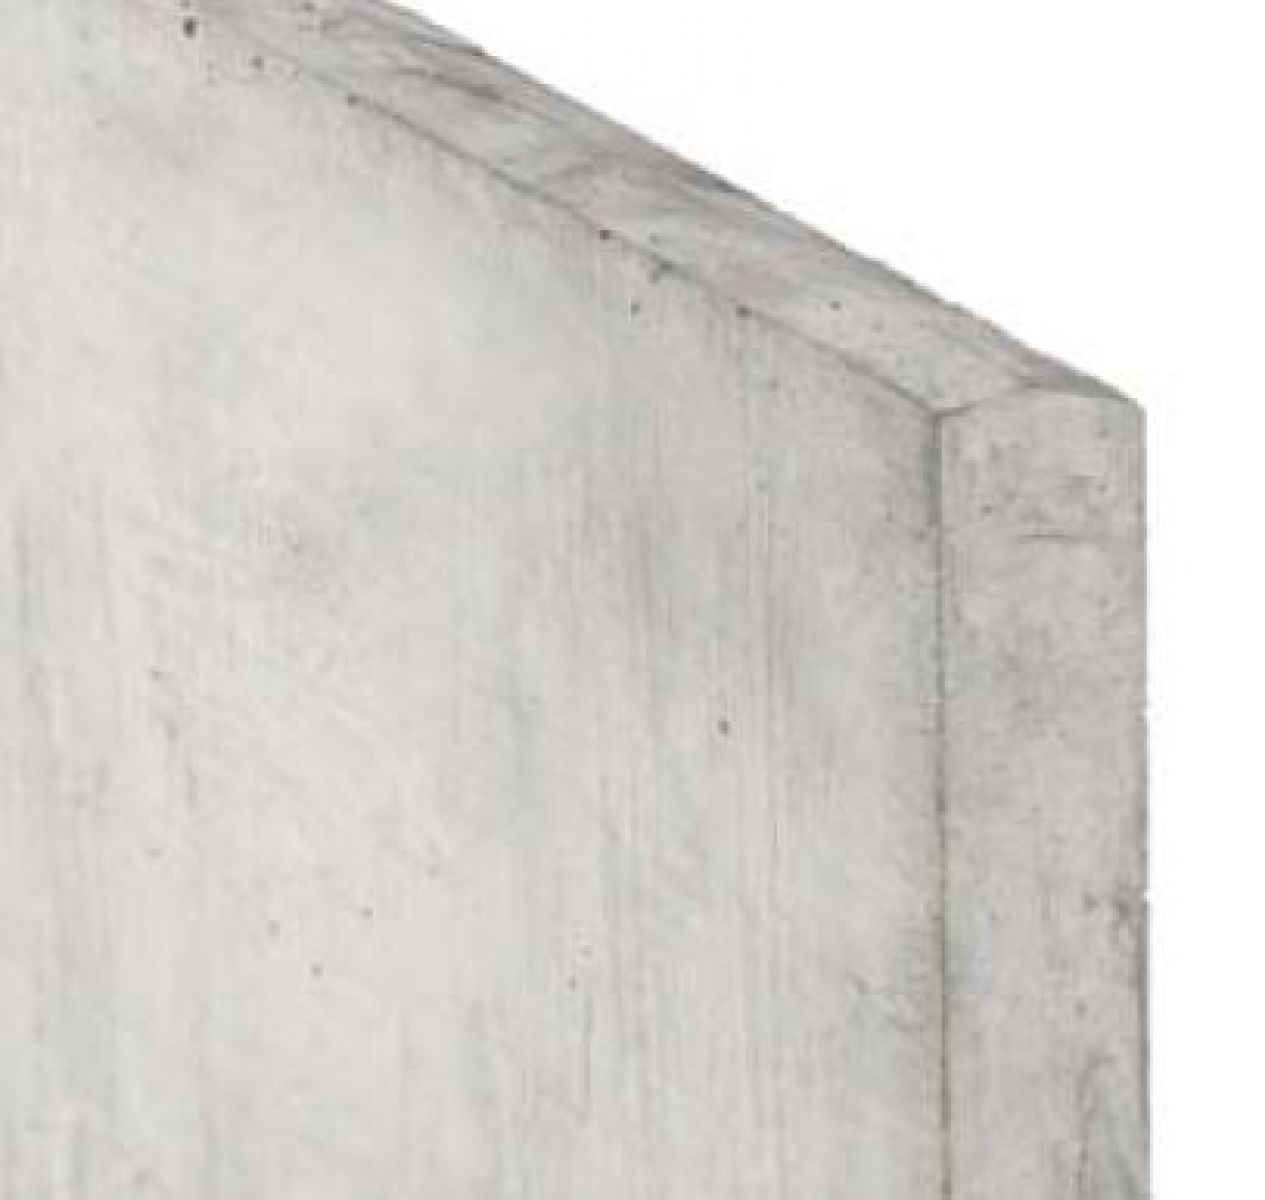 Betonnen onderplaat 3.5x25x180cm wit/grijs 2-zijdig glad met afwateringsdakje